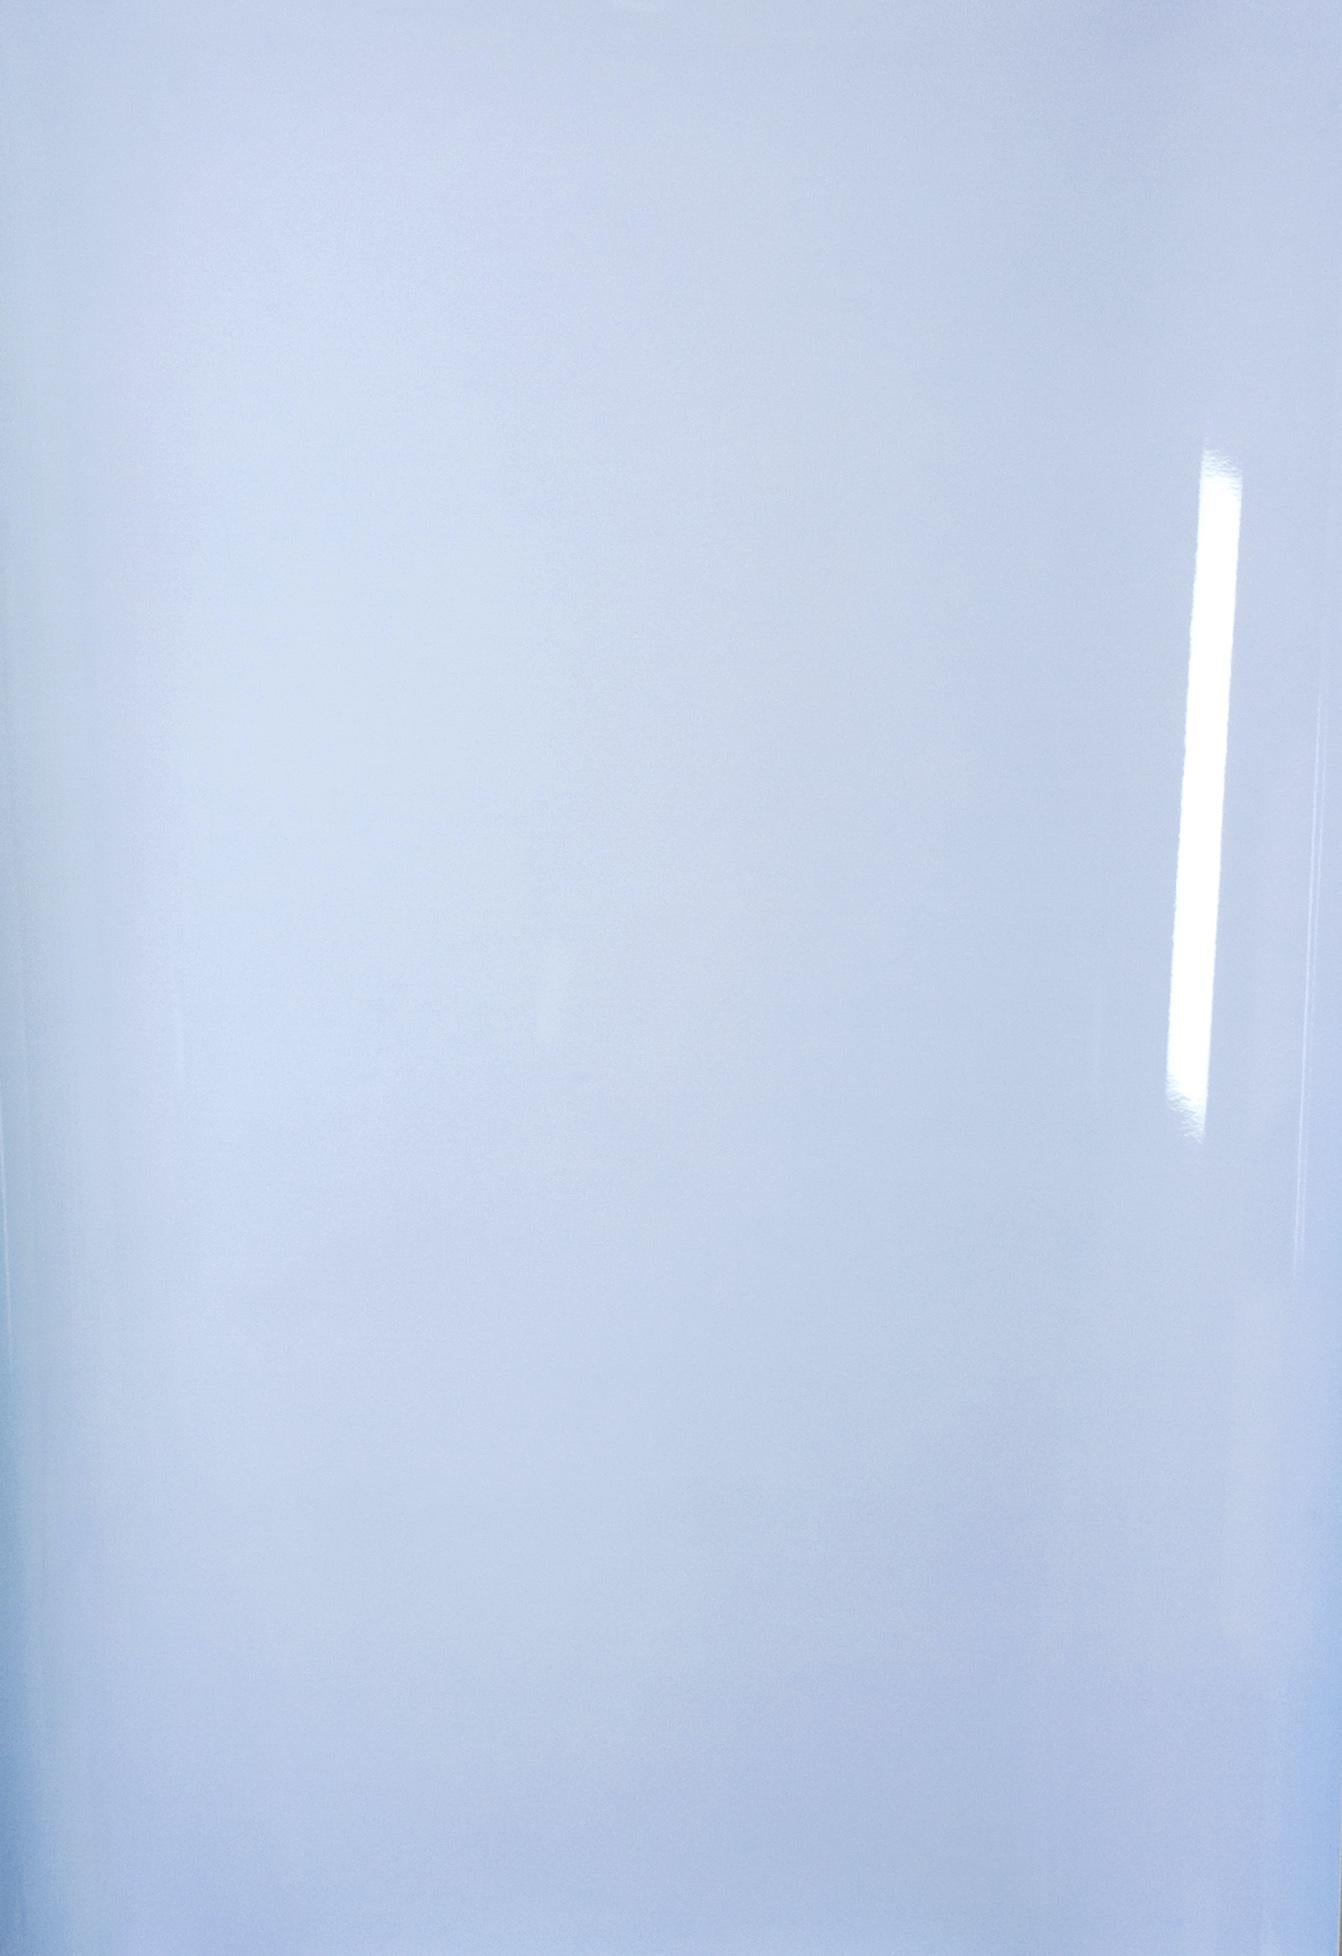 Shadows on Paper, Nr 1 - Photographie abstraite contemporaine bleue monochrome